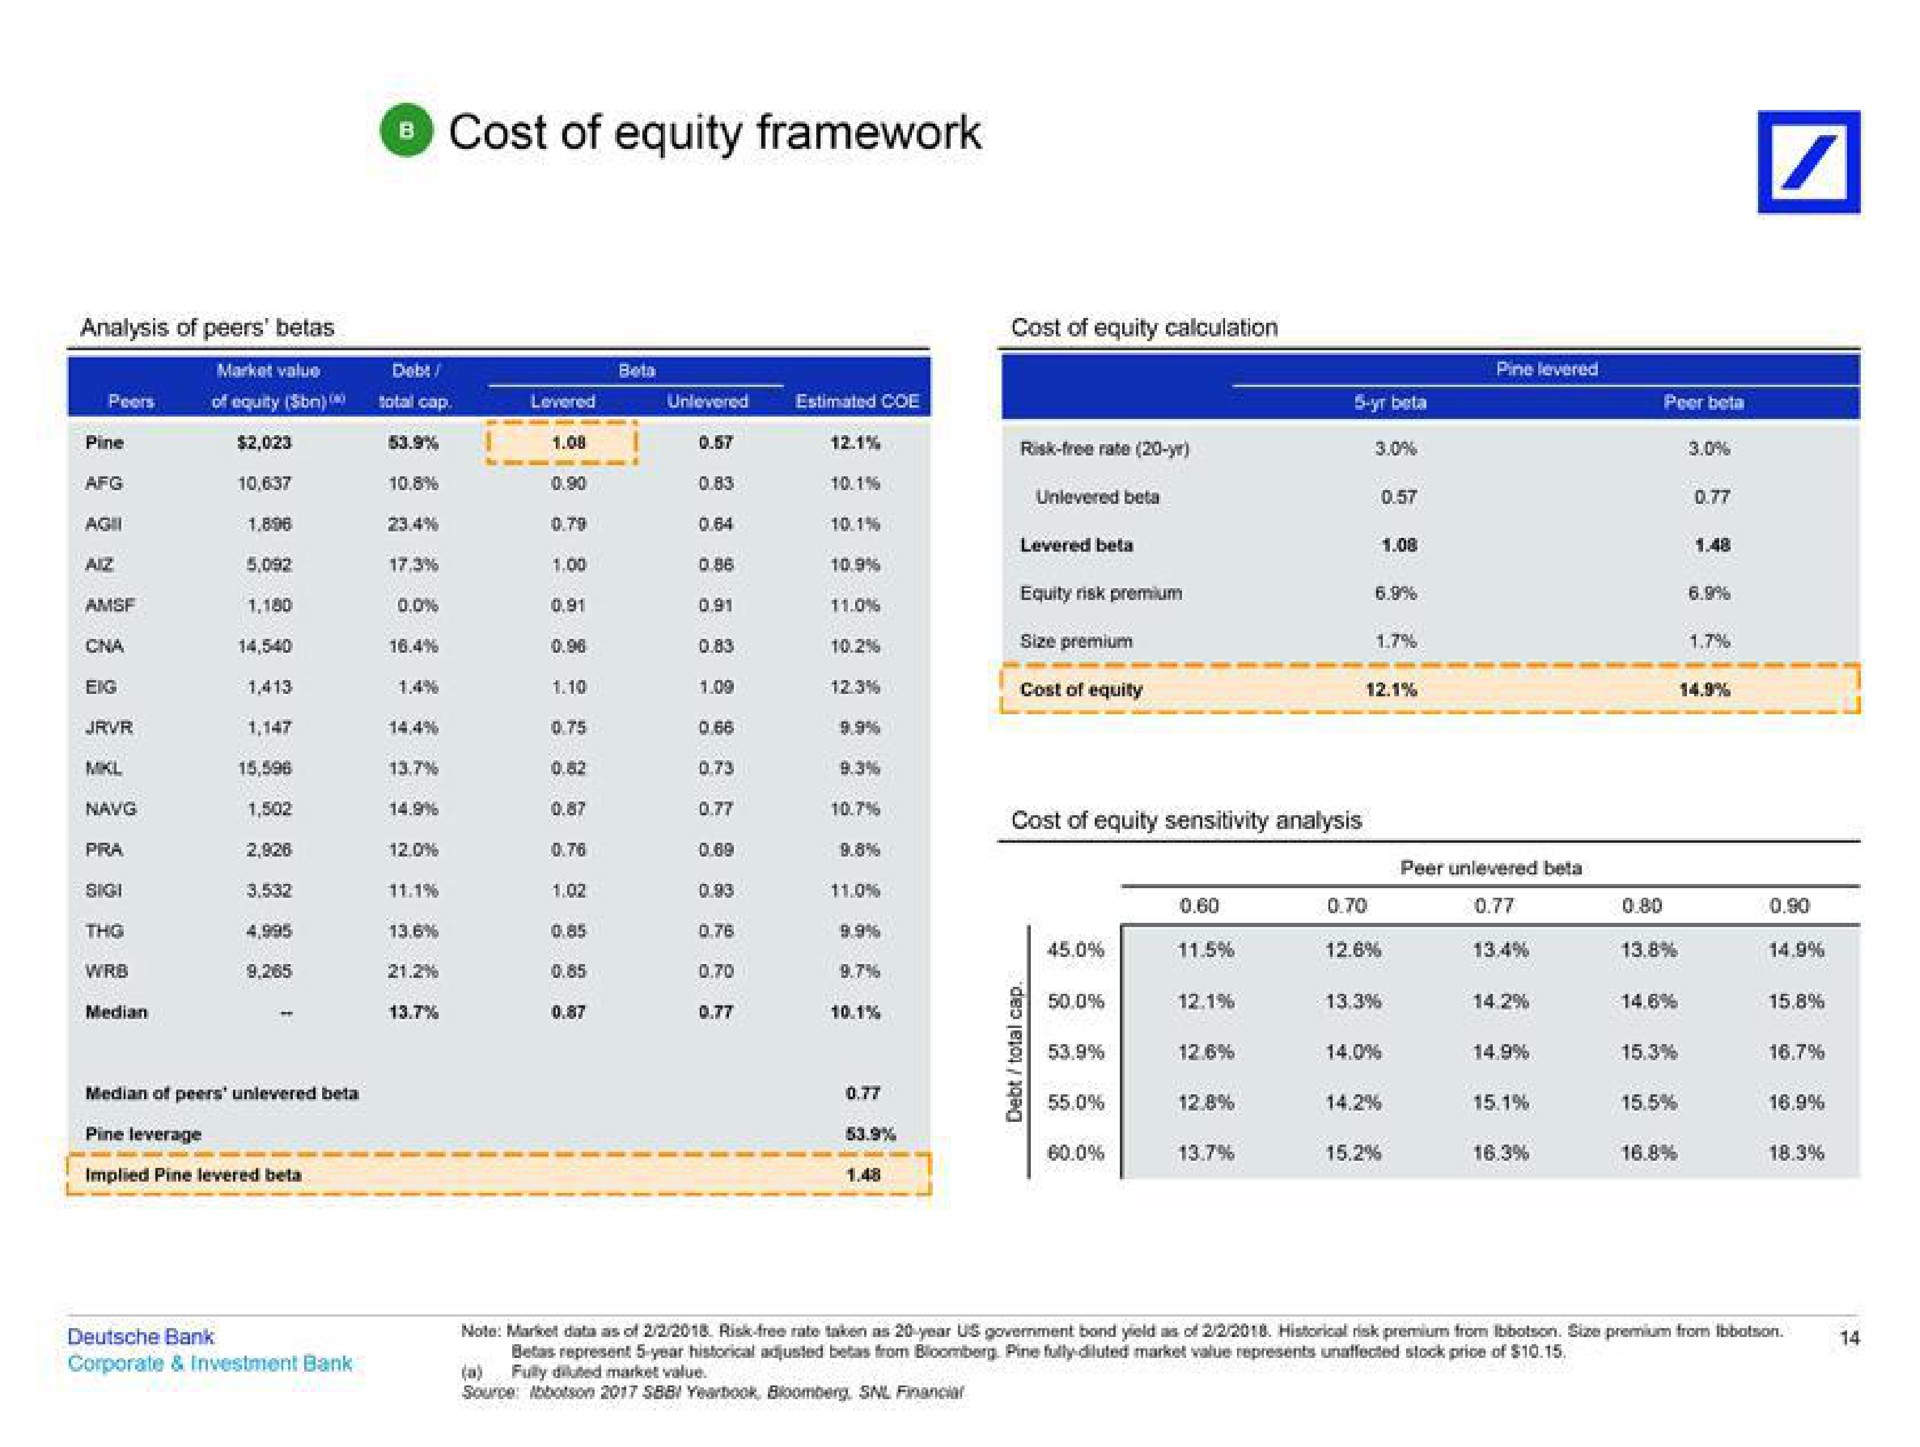 cost of equity framework | Deutsche Bank